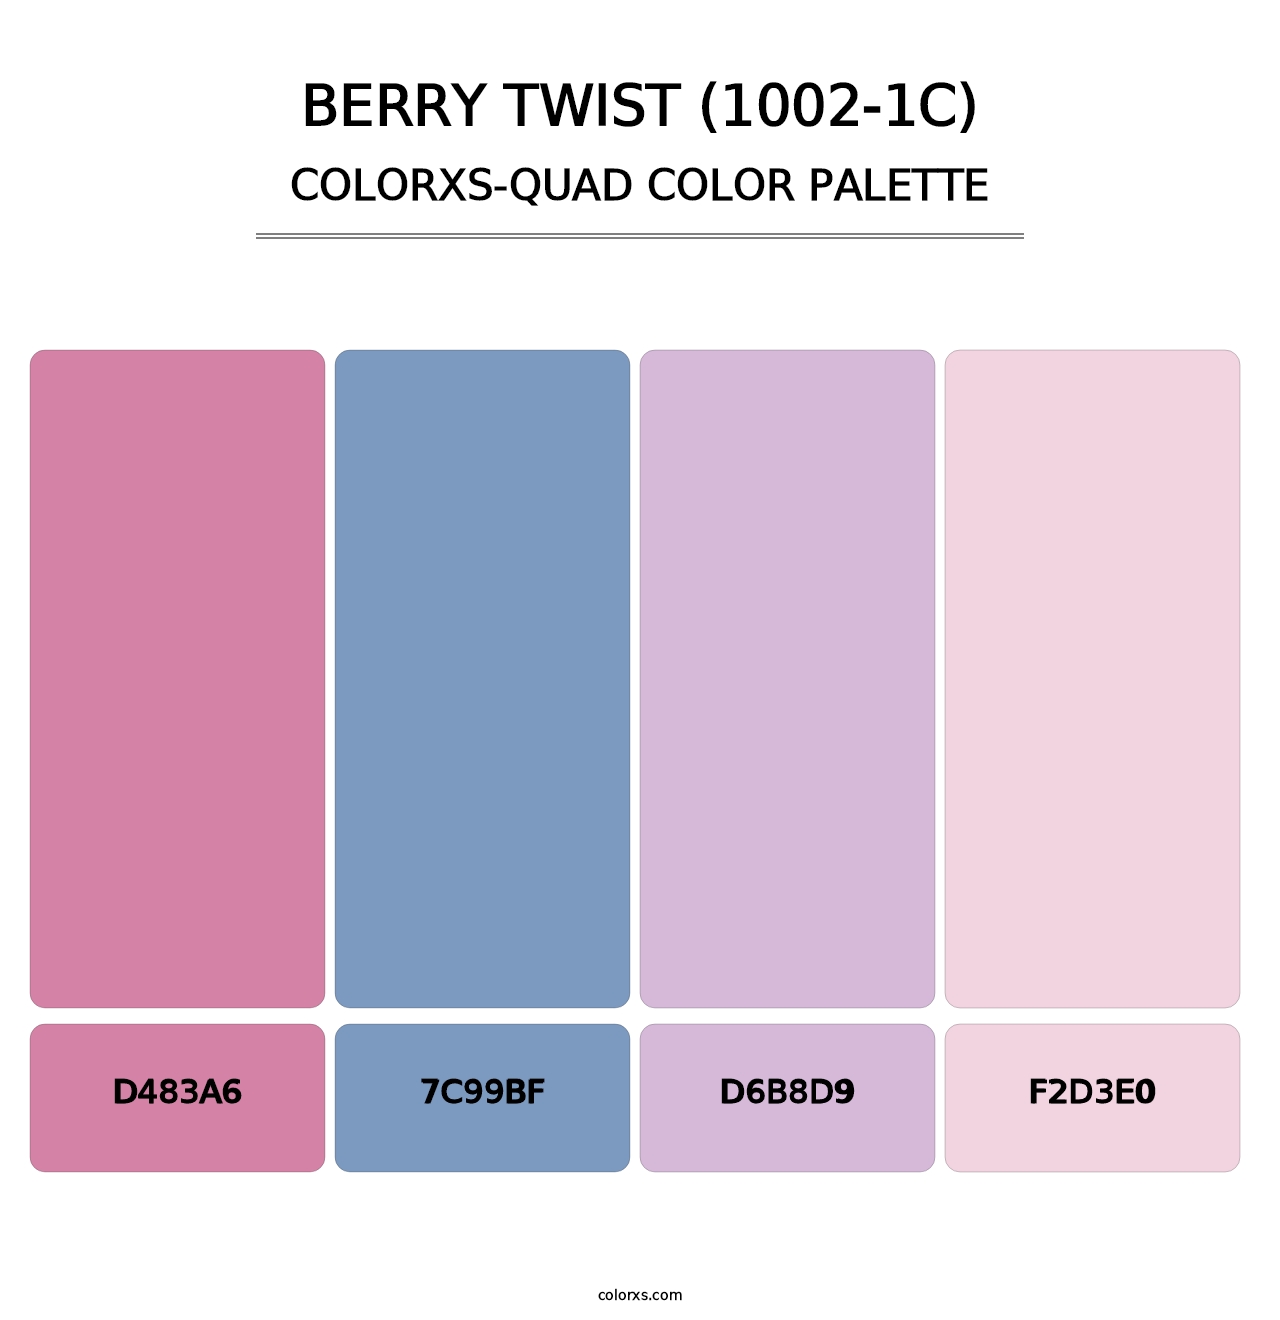 Berry Twist (1002-1C) - Colorxs Quad Palette